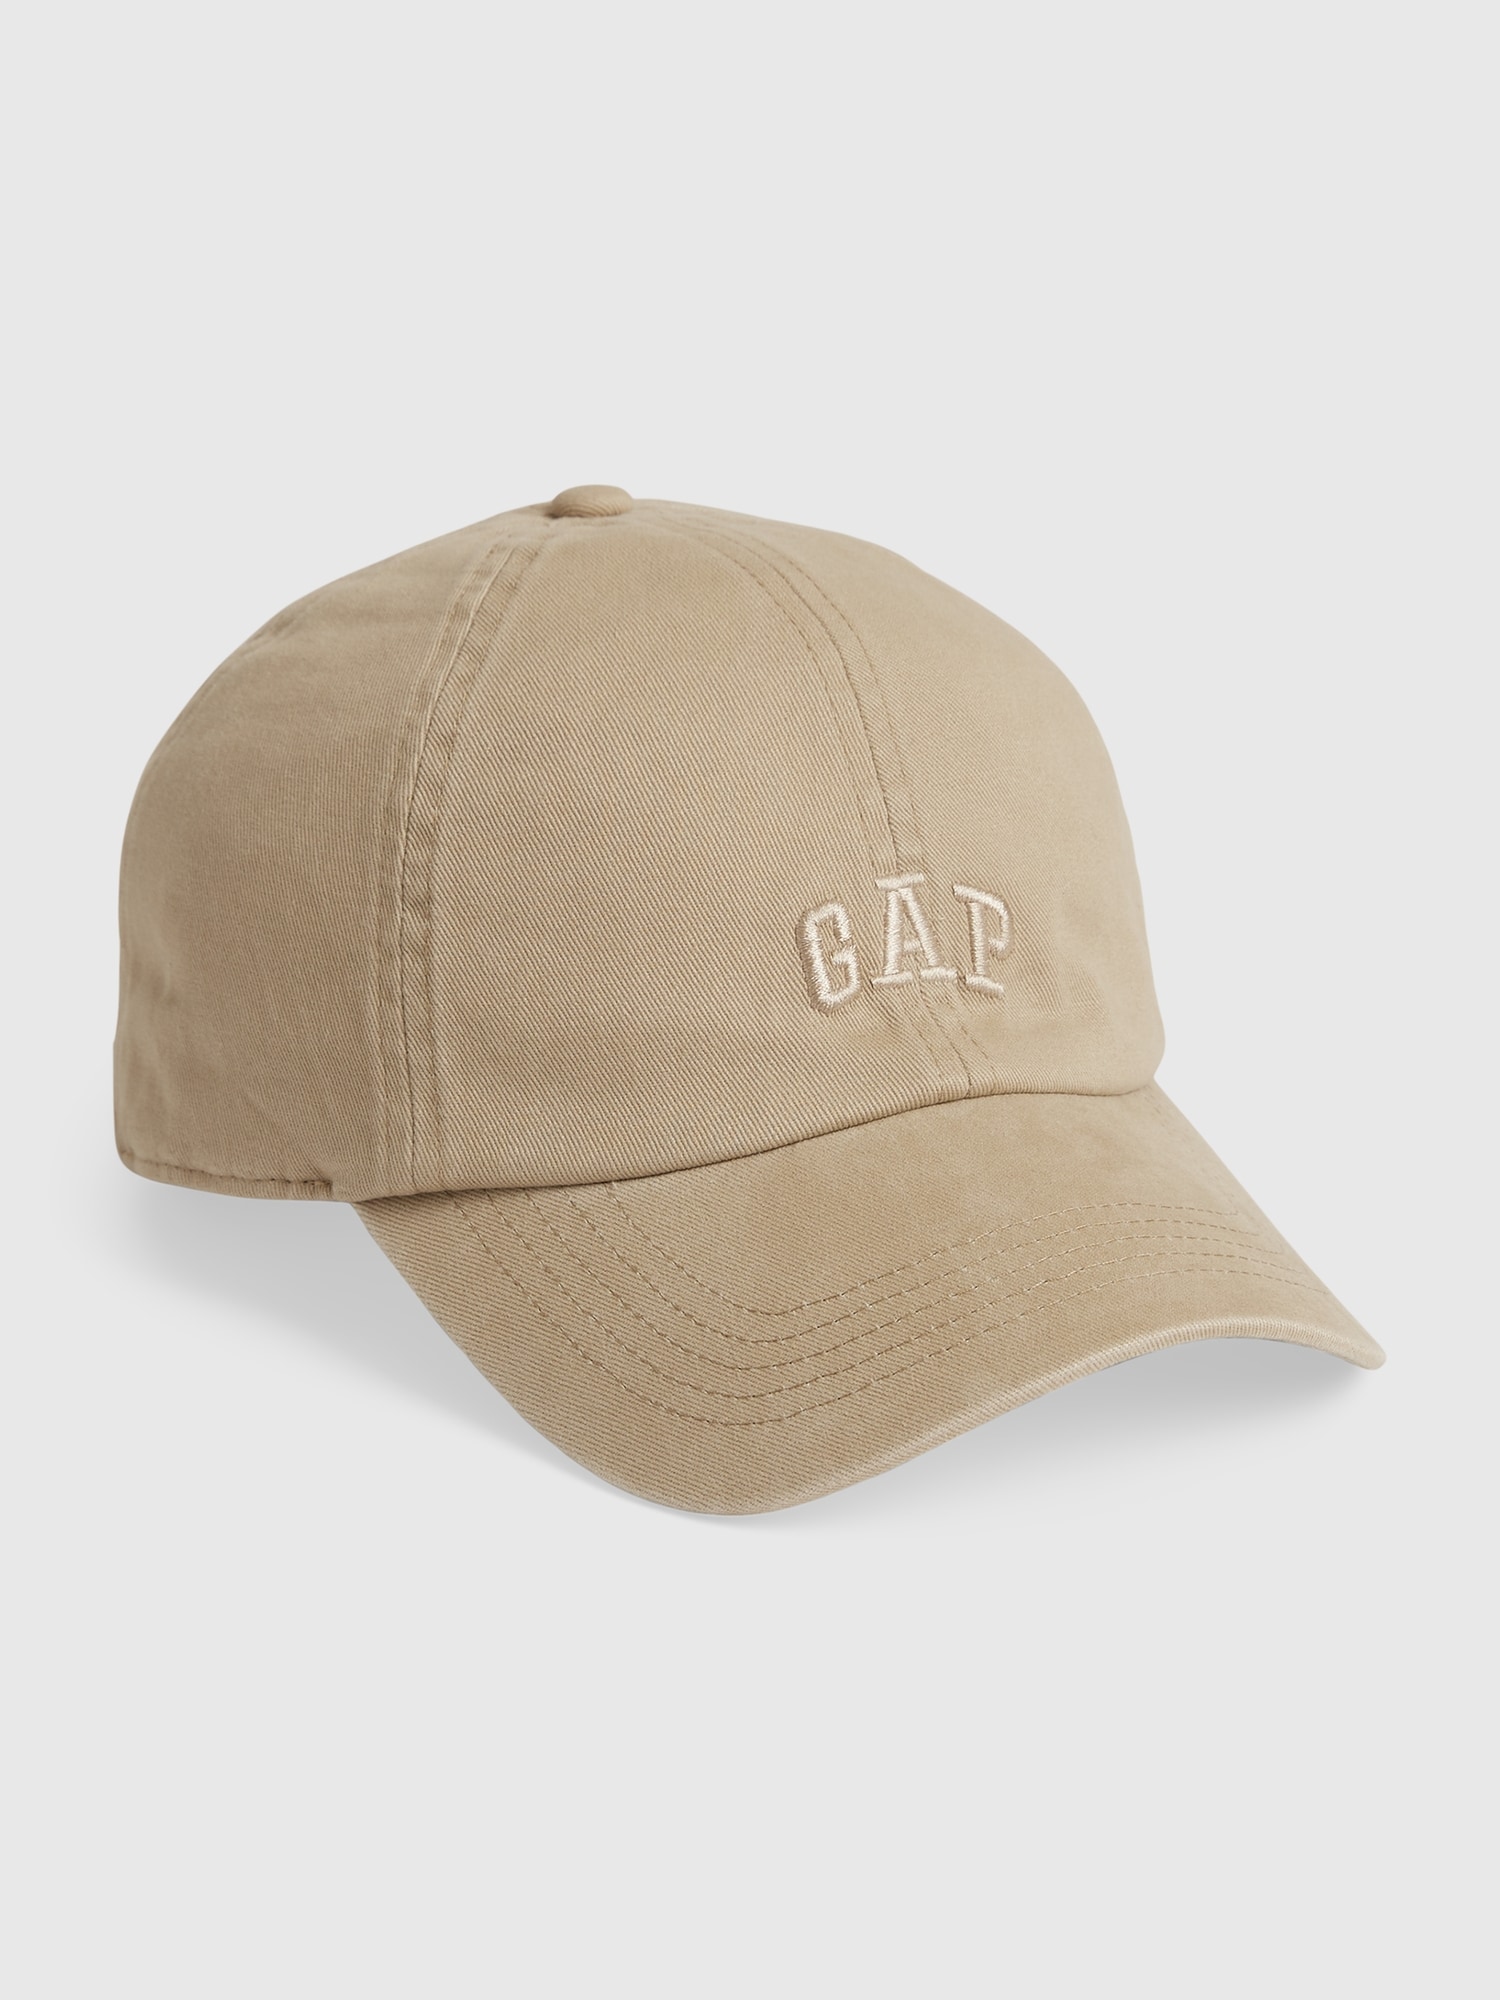 Gap Logo Baseball Hat | Gap